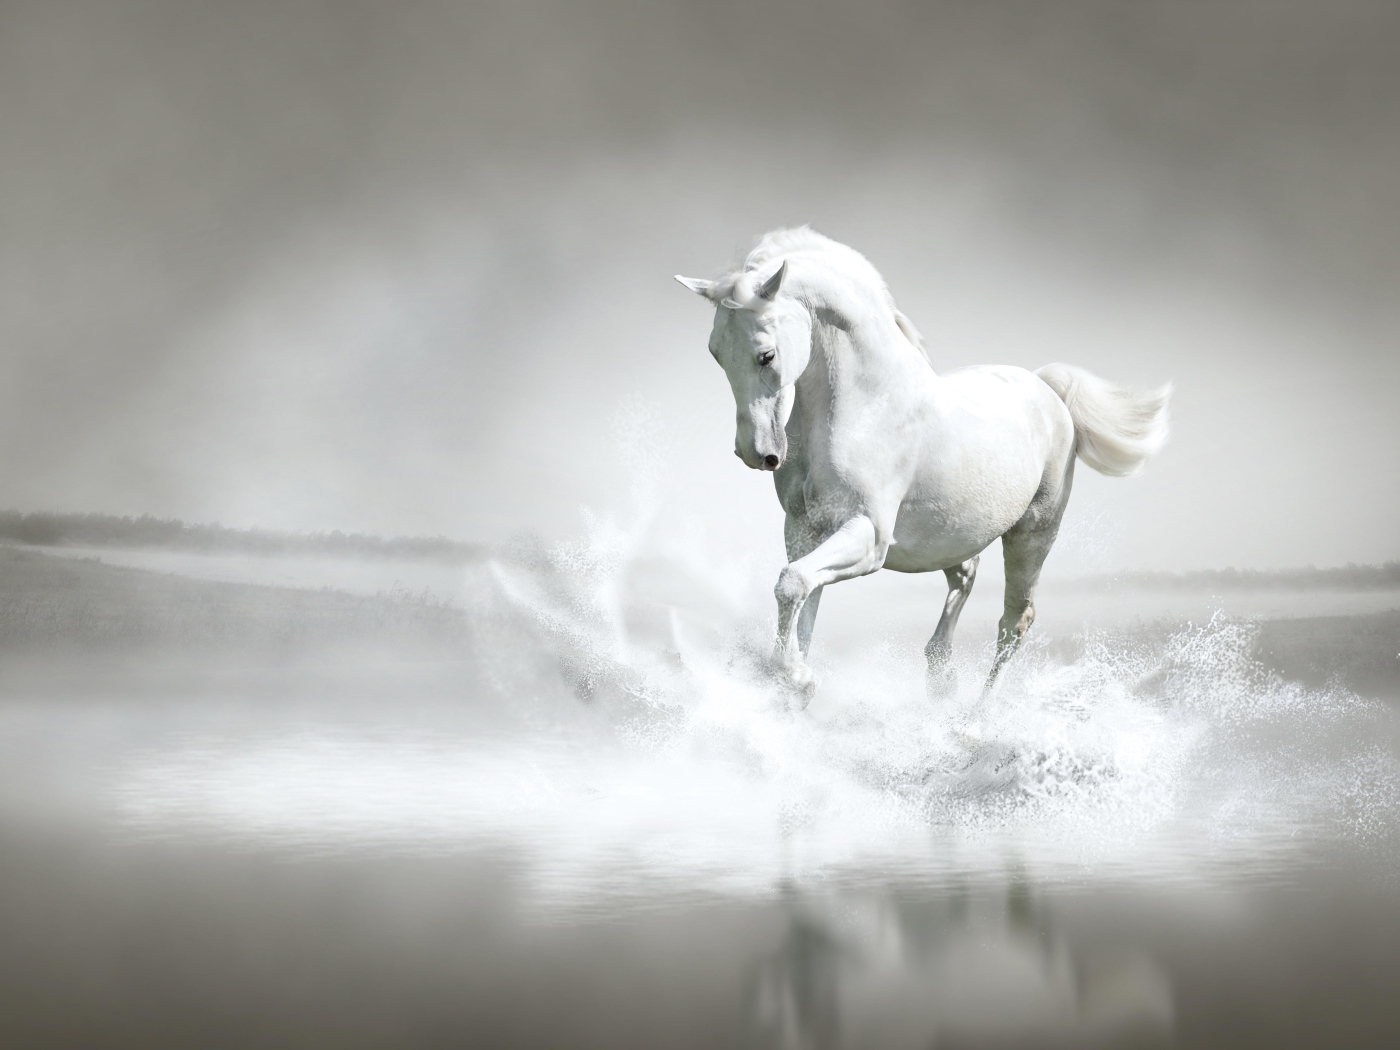 Красивый белый конь бежит по воде